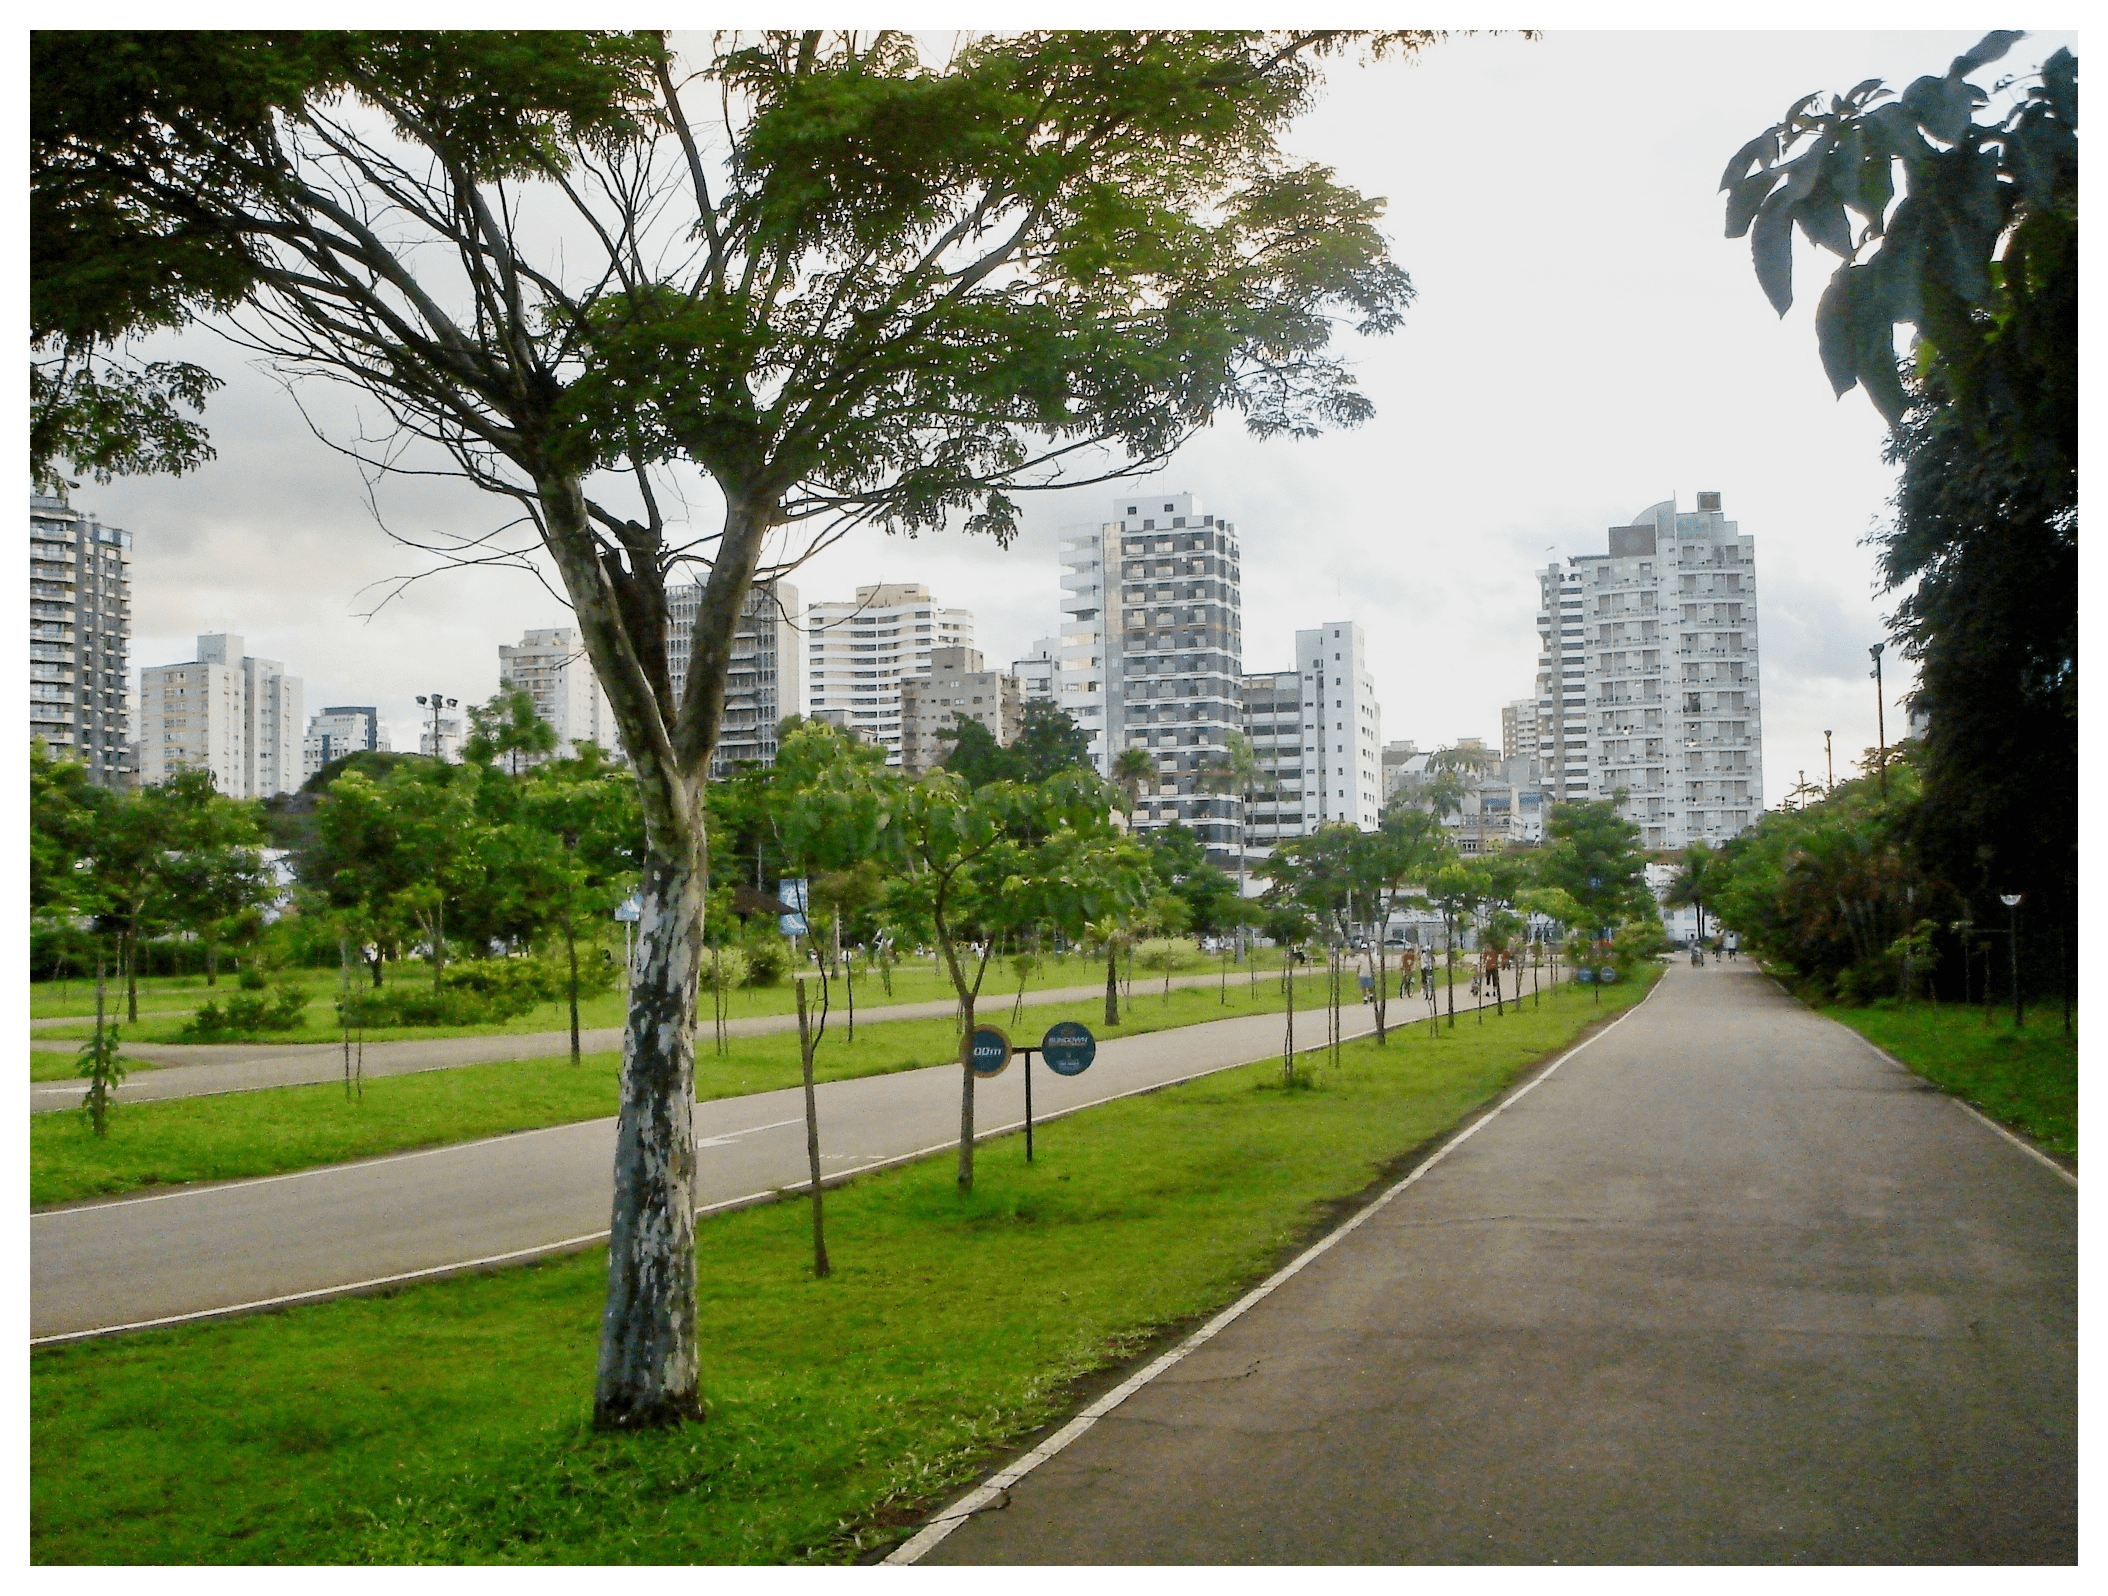 Flats em SP | All Flats - Locação, Compra e Venda de Flats em São Paulo